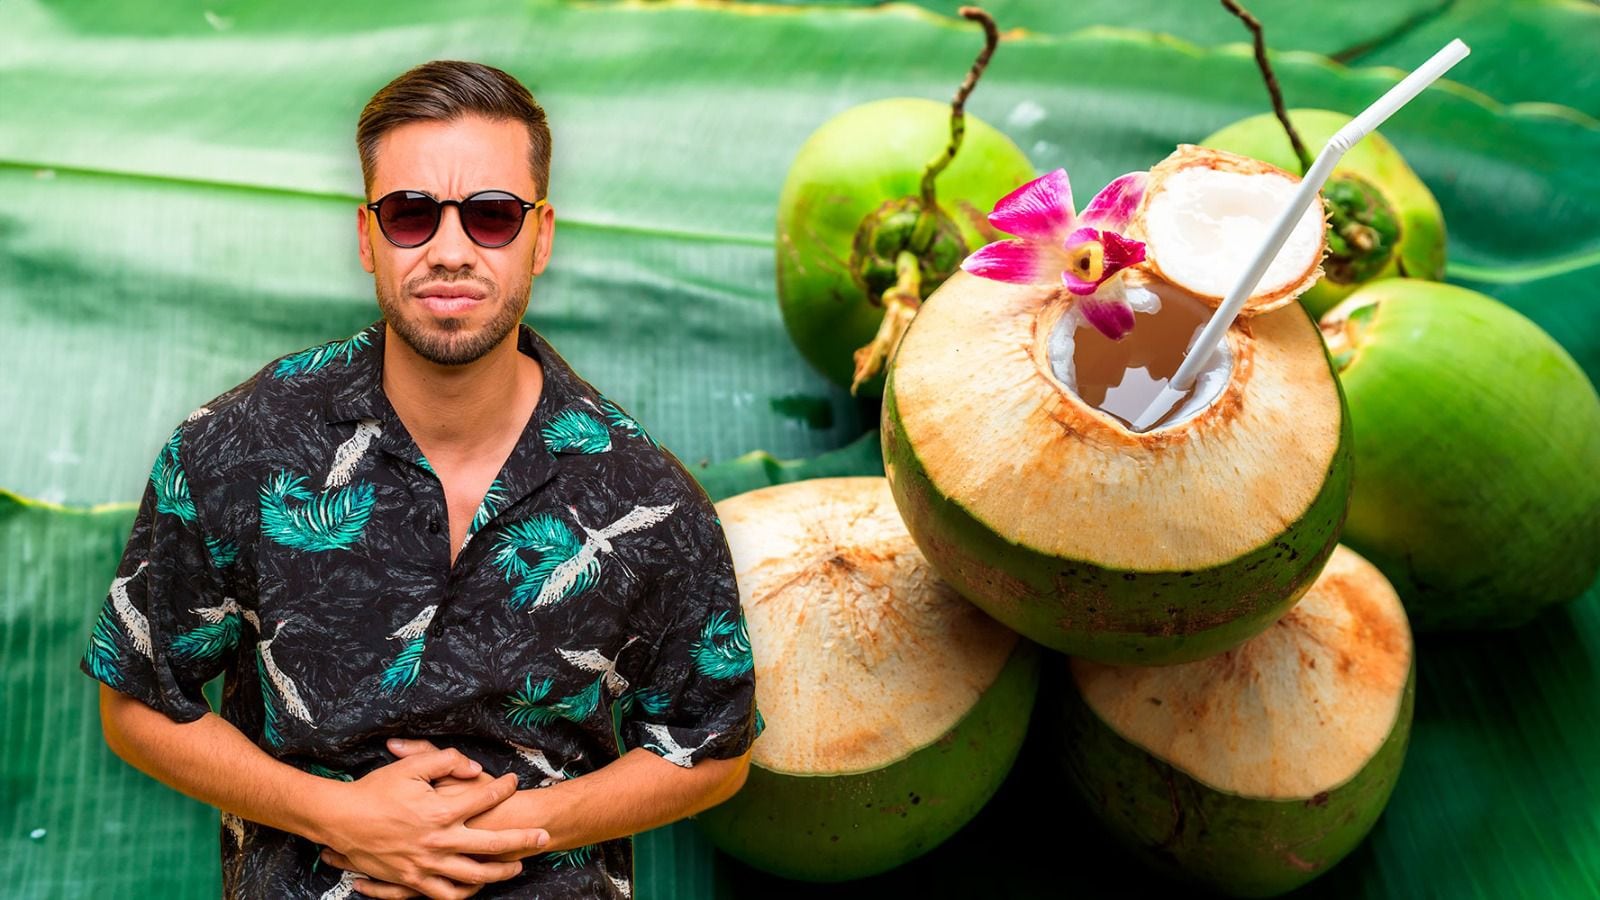 El agua de coco tiene beneficios para el cuerpo, pero demasiada tiene efectos secundarios. (Fotoarte: El Financiero | Shutterstock).